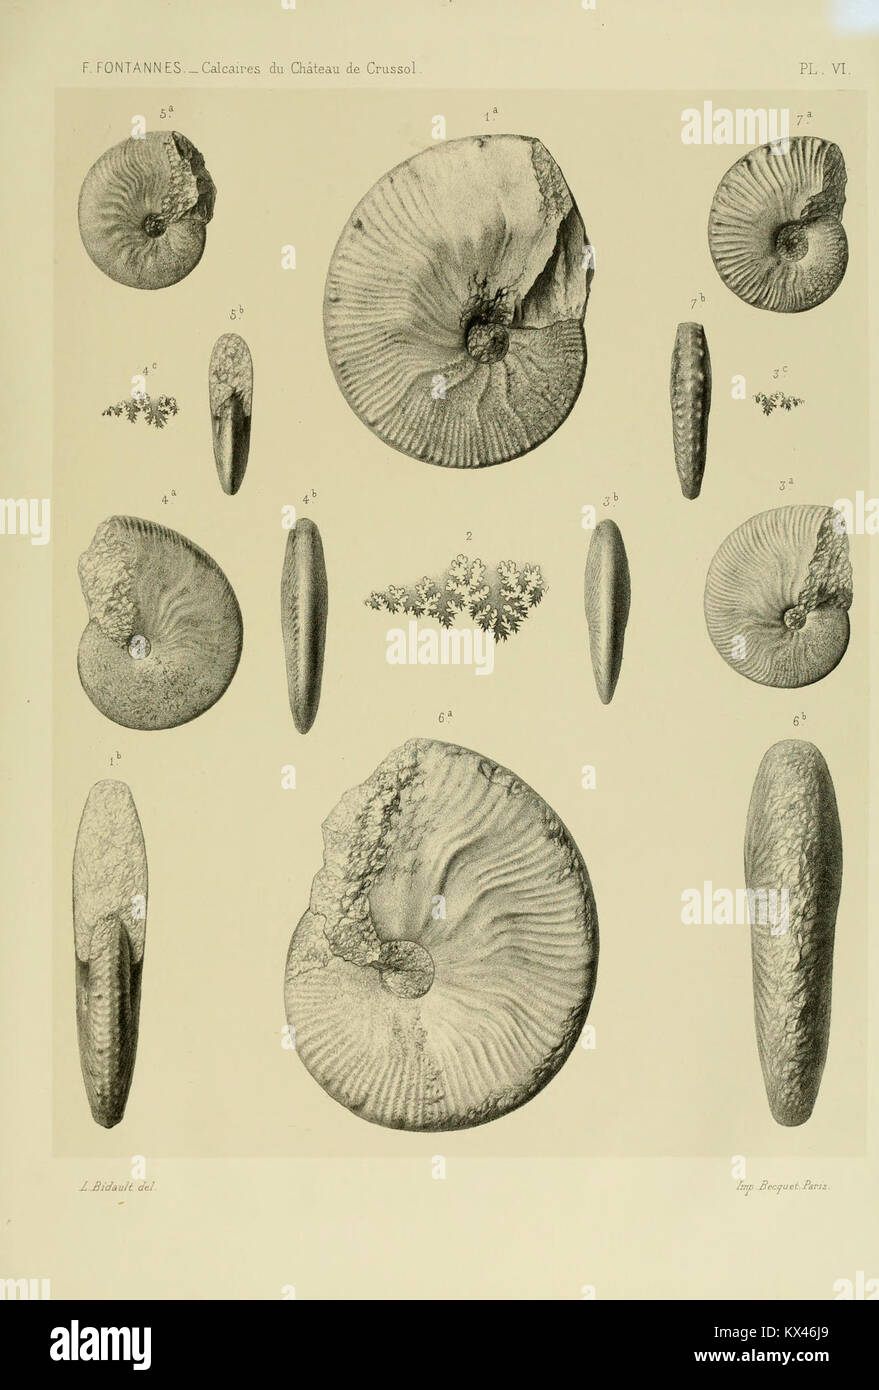 Description de ammonites des calcaires du château de Crussol, Ardèche (Plate VI) BHL13125622 Stock Photo